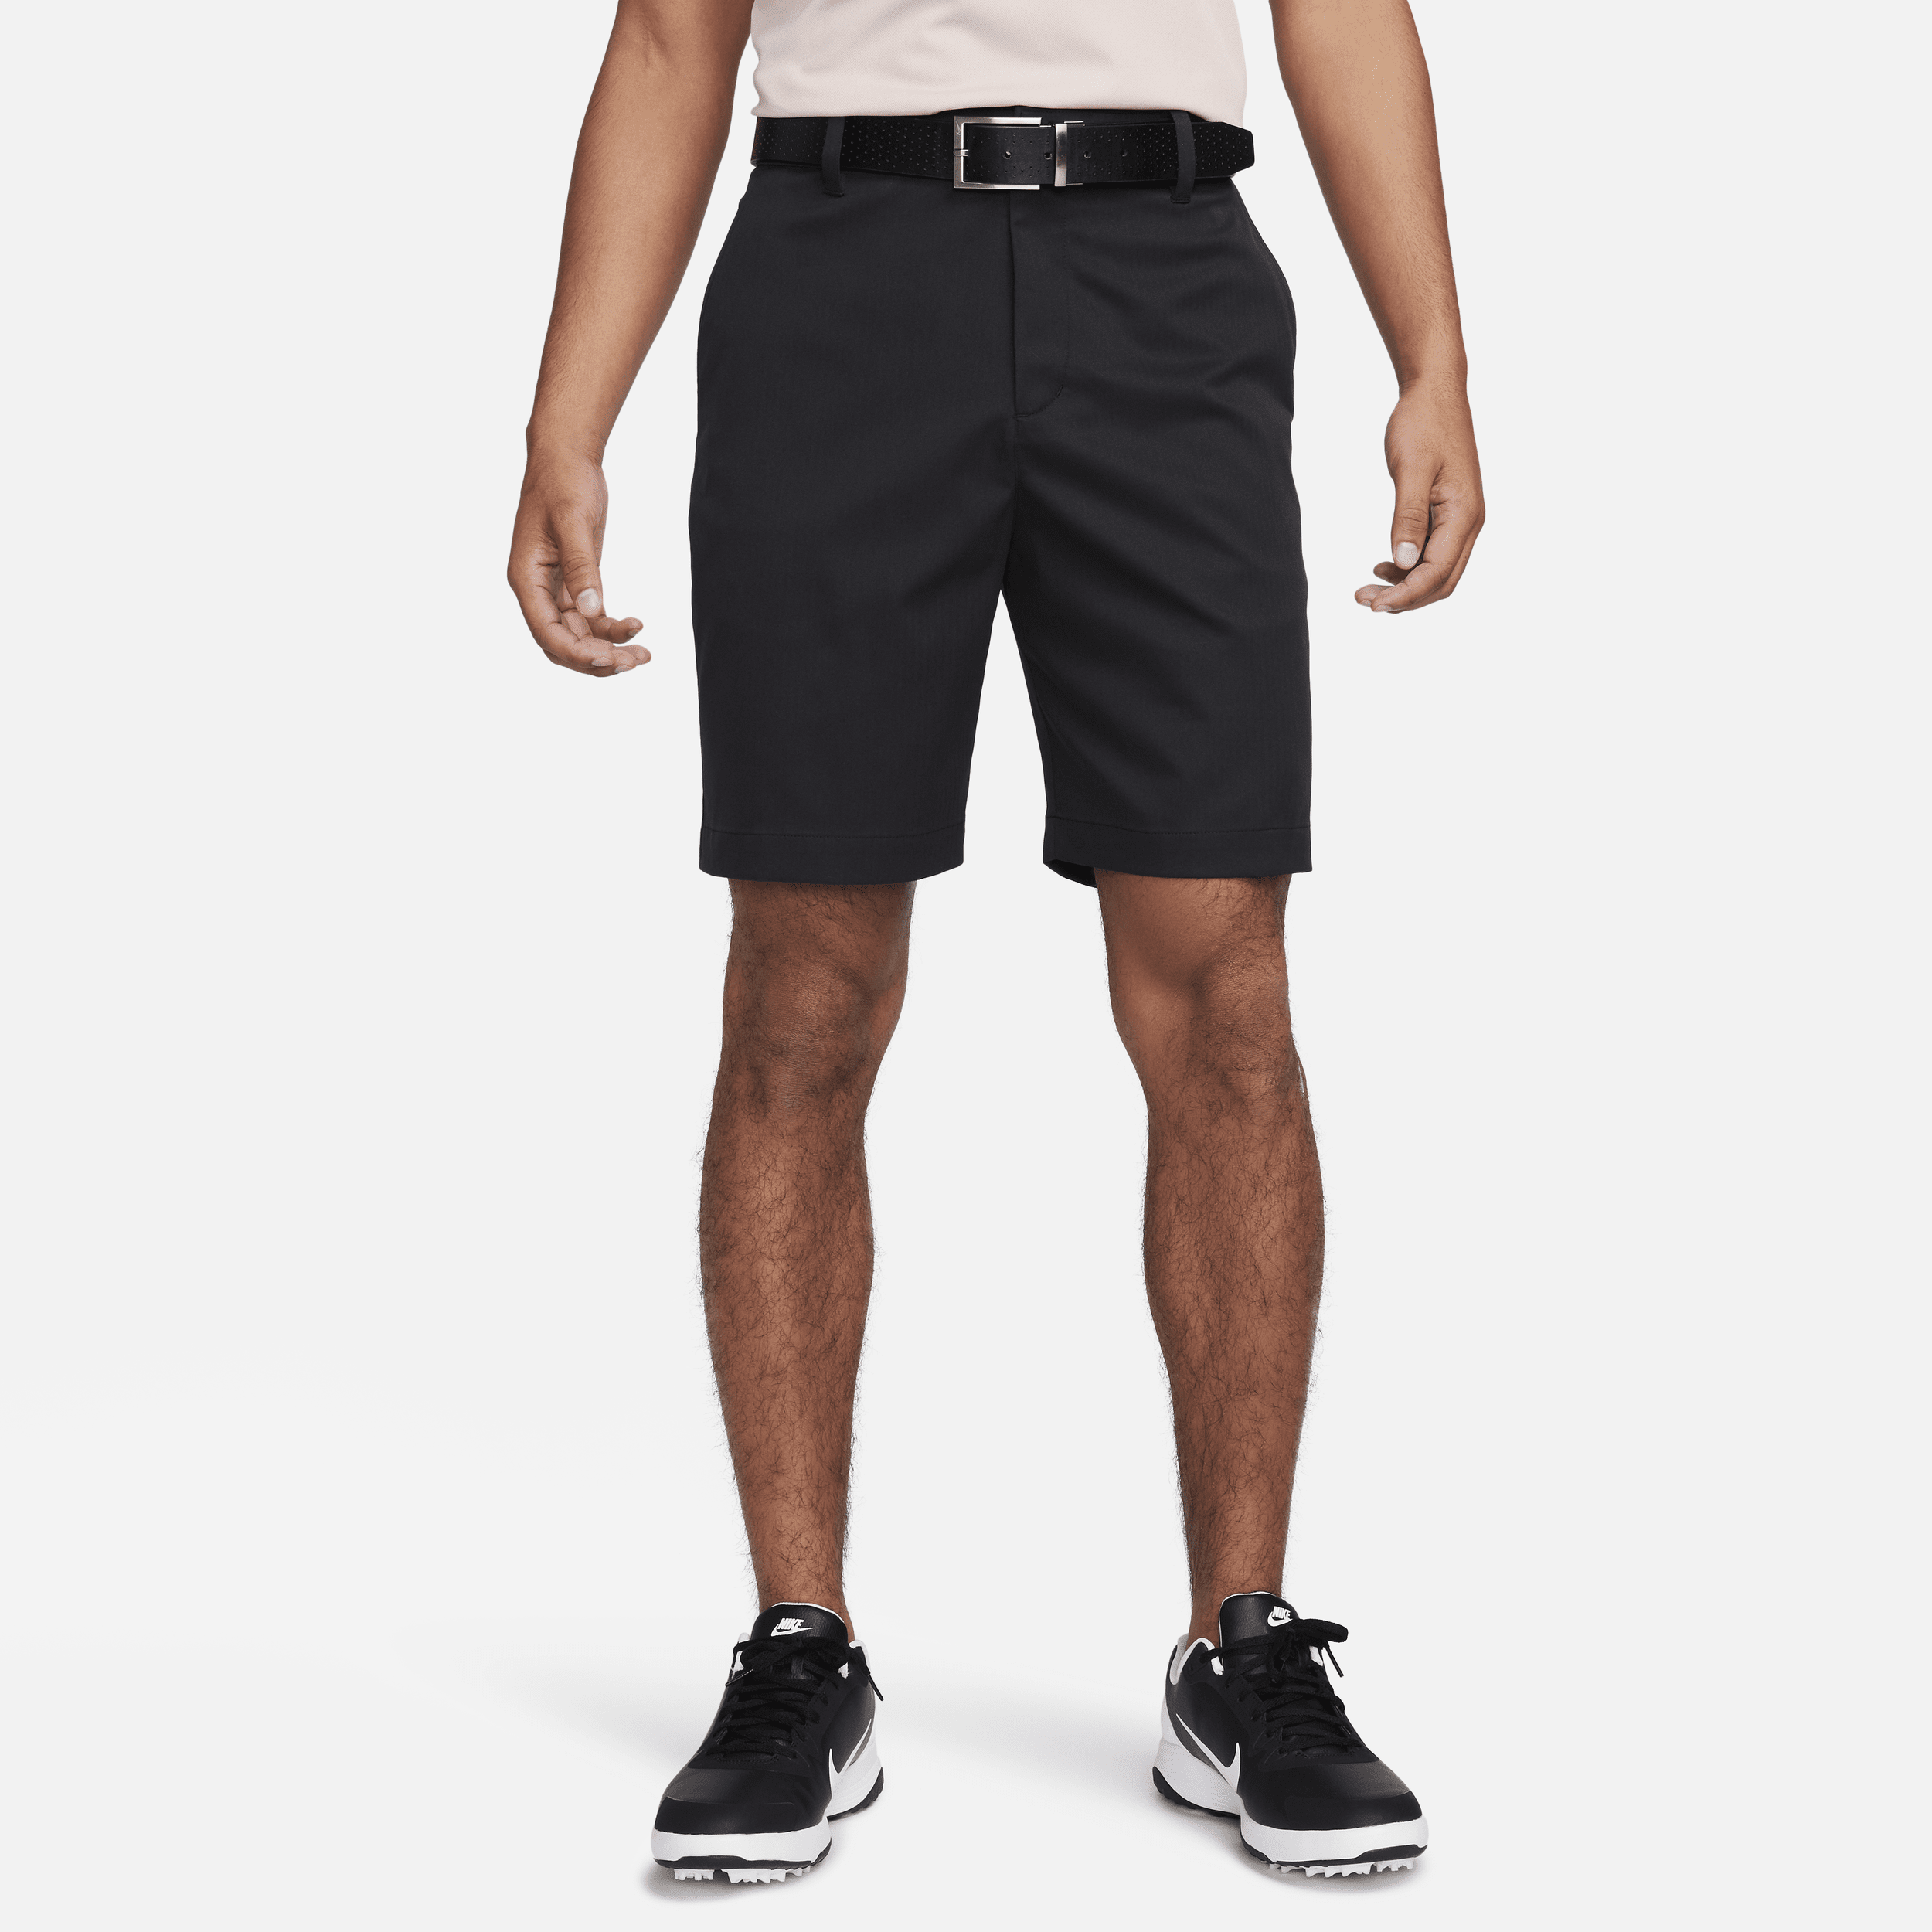 Nike Tour-chino-golfshorts (20 cm) til mænd - sort